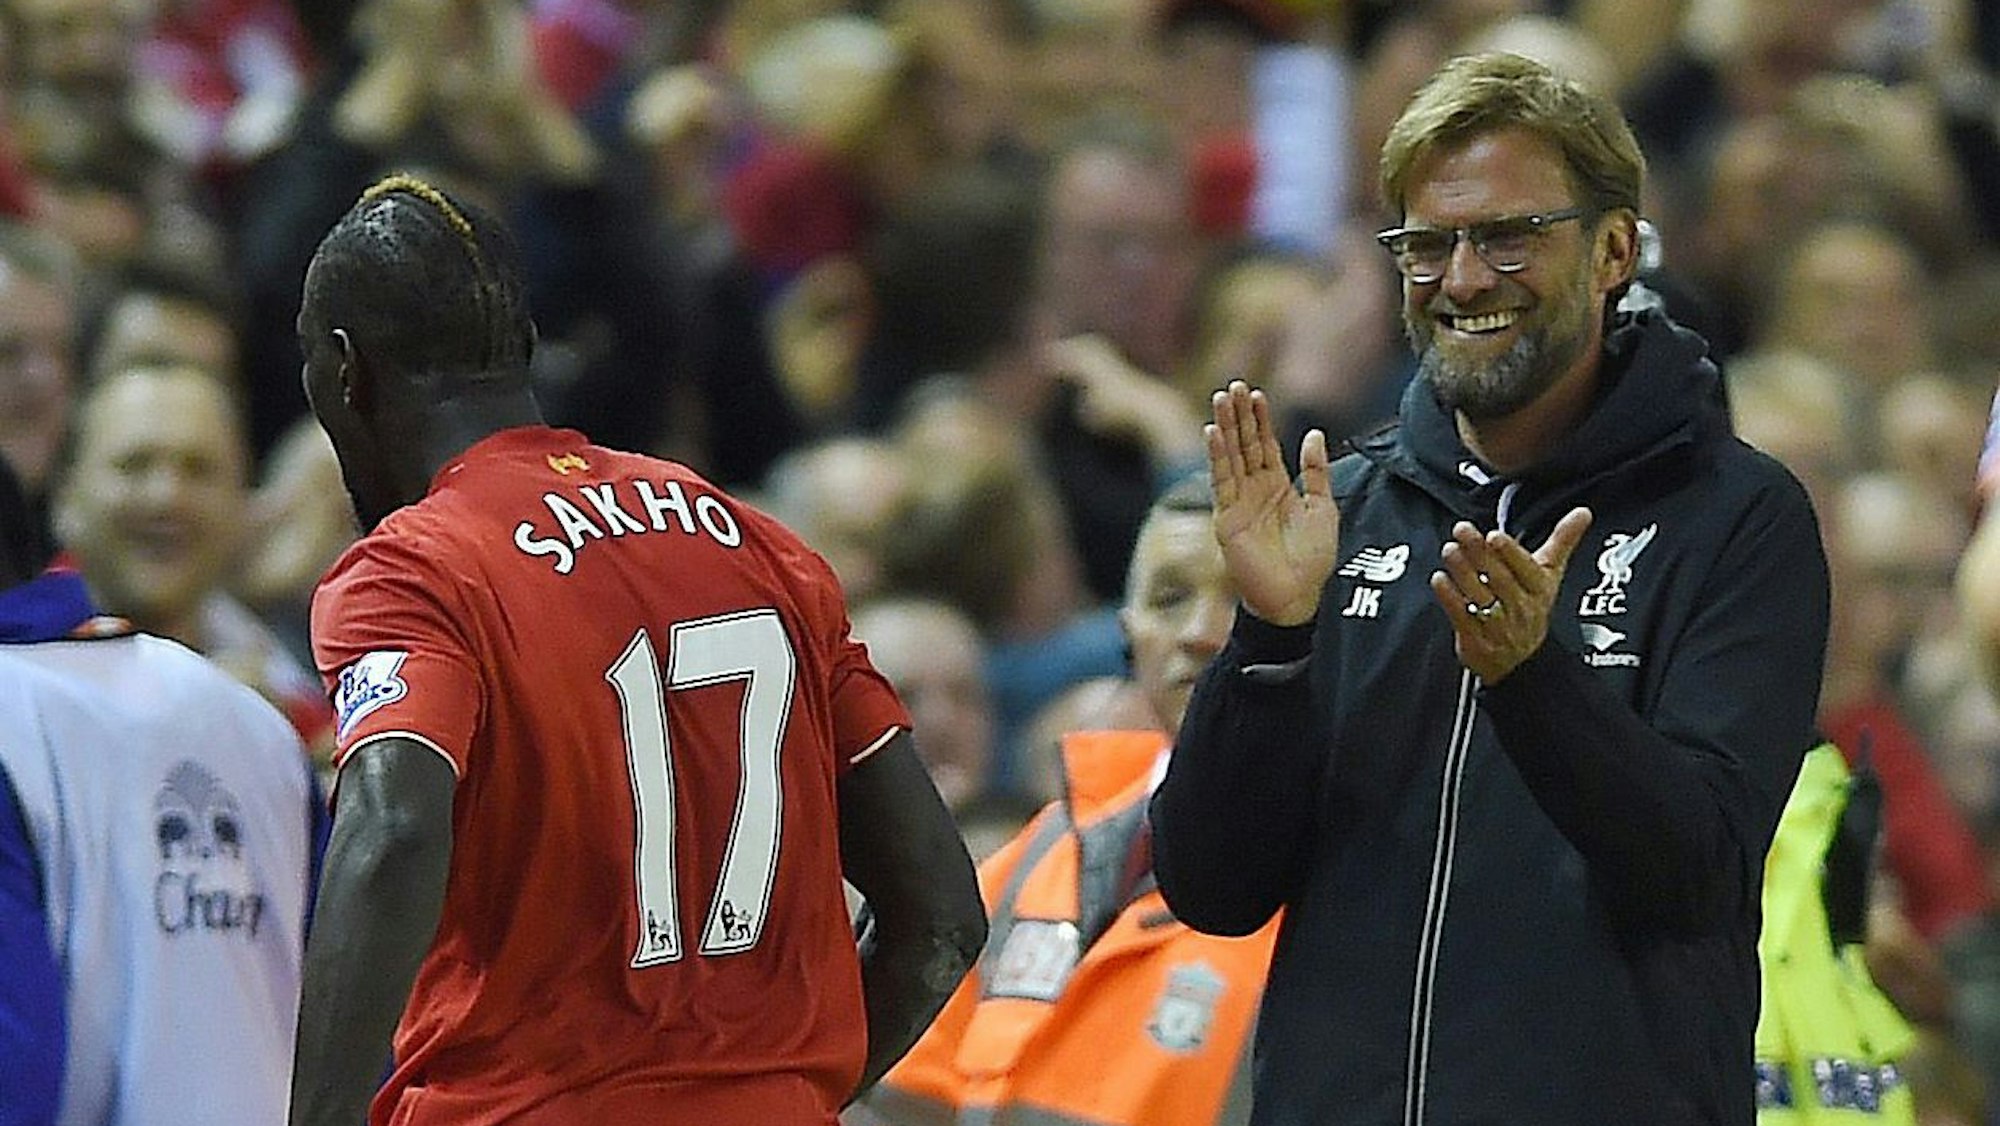 Liverpool-Trainer Jürgen Klopp applaudiert grinsend seinem Spieler Mamadou Sakho.